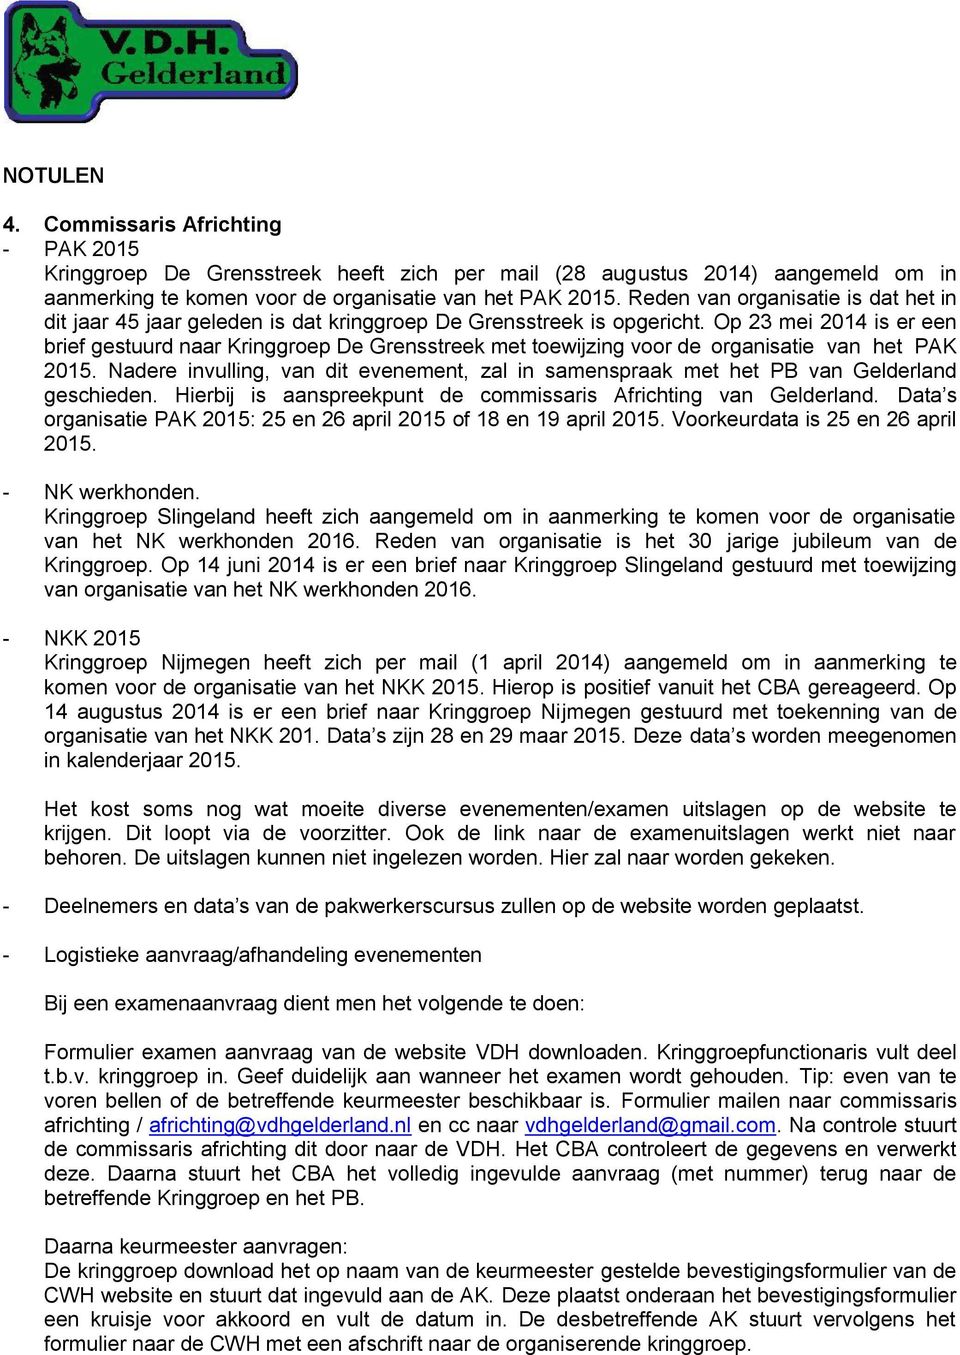 Op 23 mei 2014 is er een brief gestuurd naar Kringgroep De Grensstreek met toewijzing voor de organisatie van het PAK 2015.